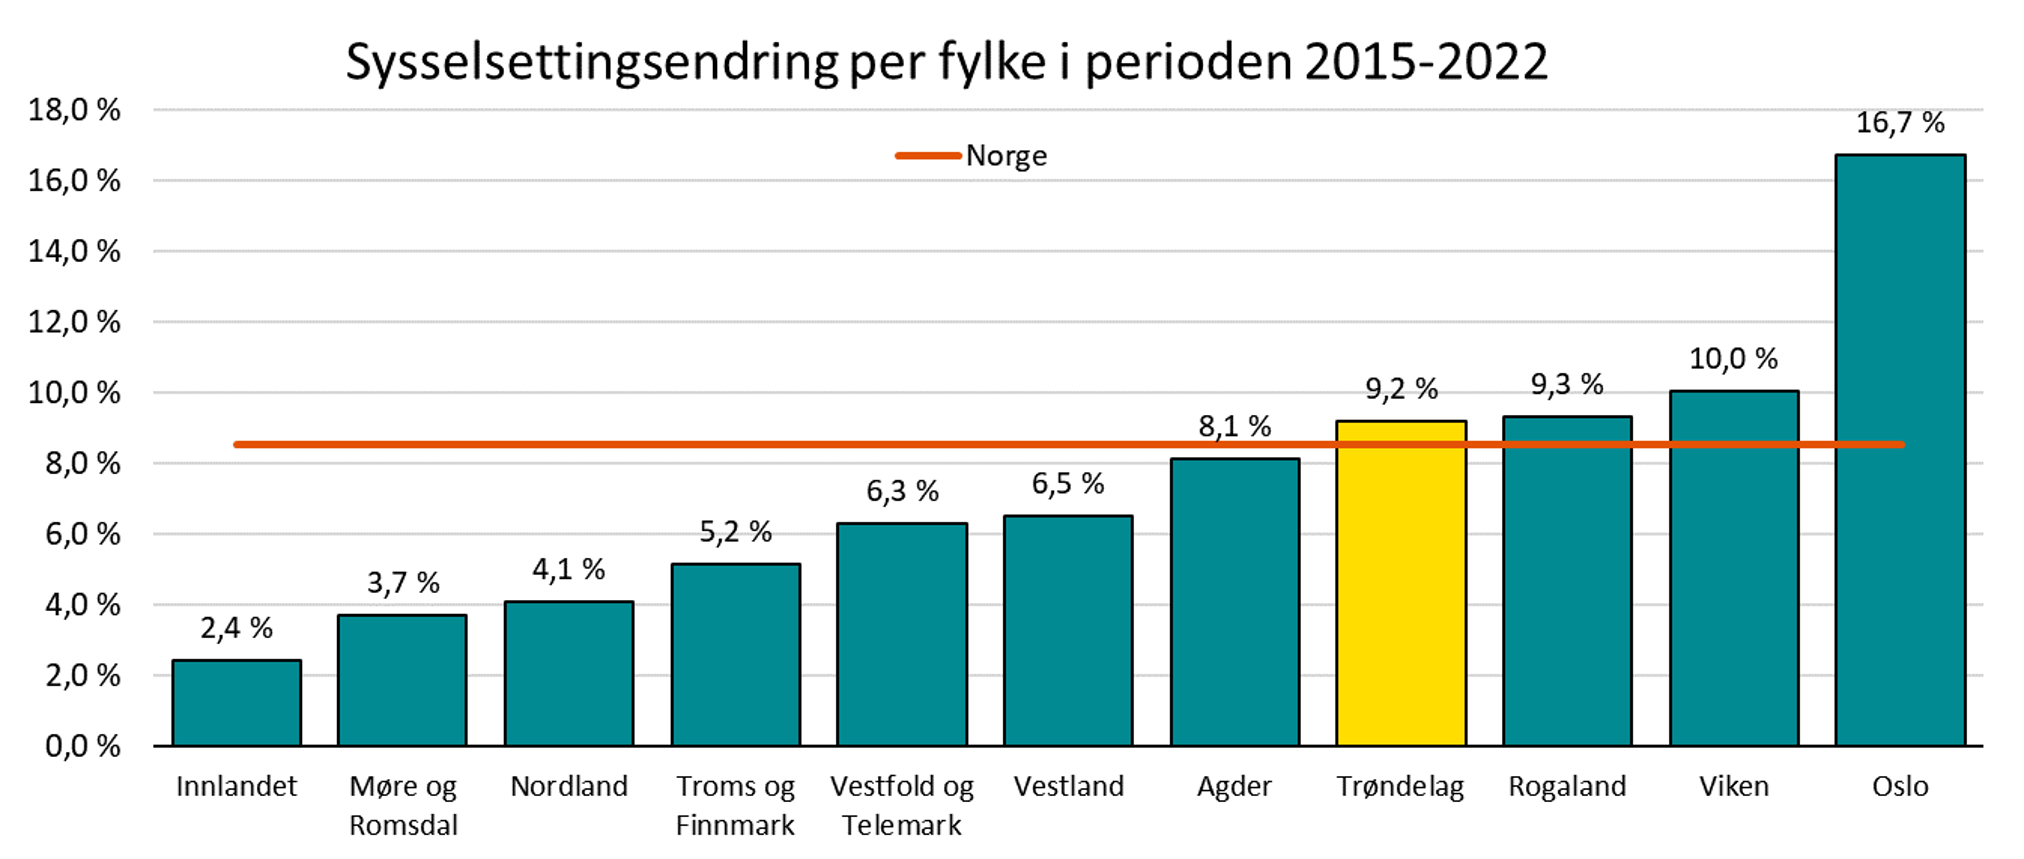 Sysselsettingsendring per fylke i perioden 2015-2022